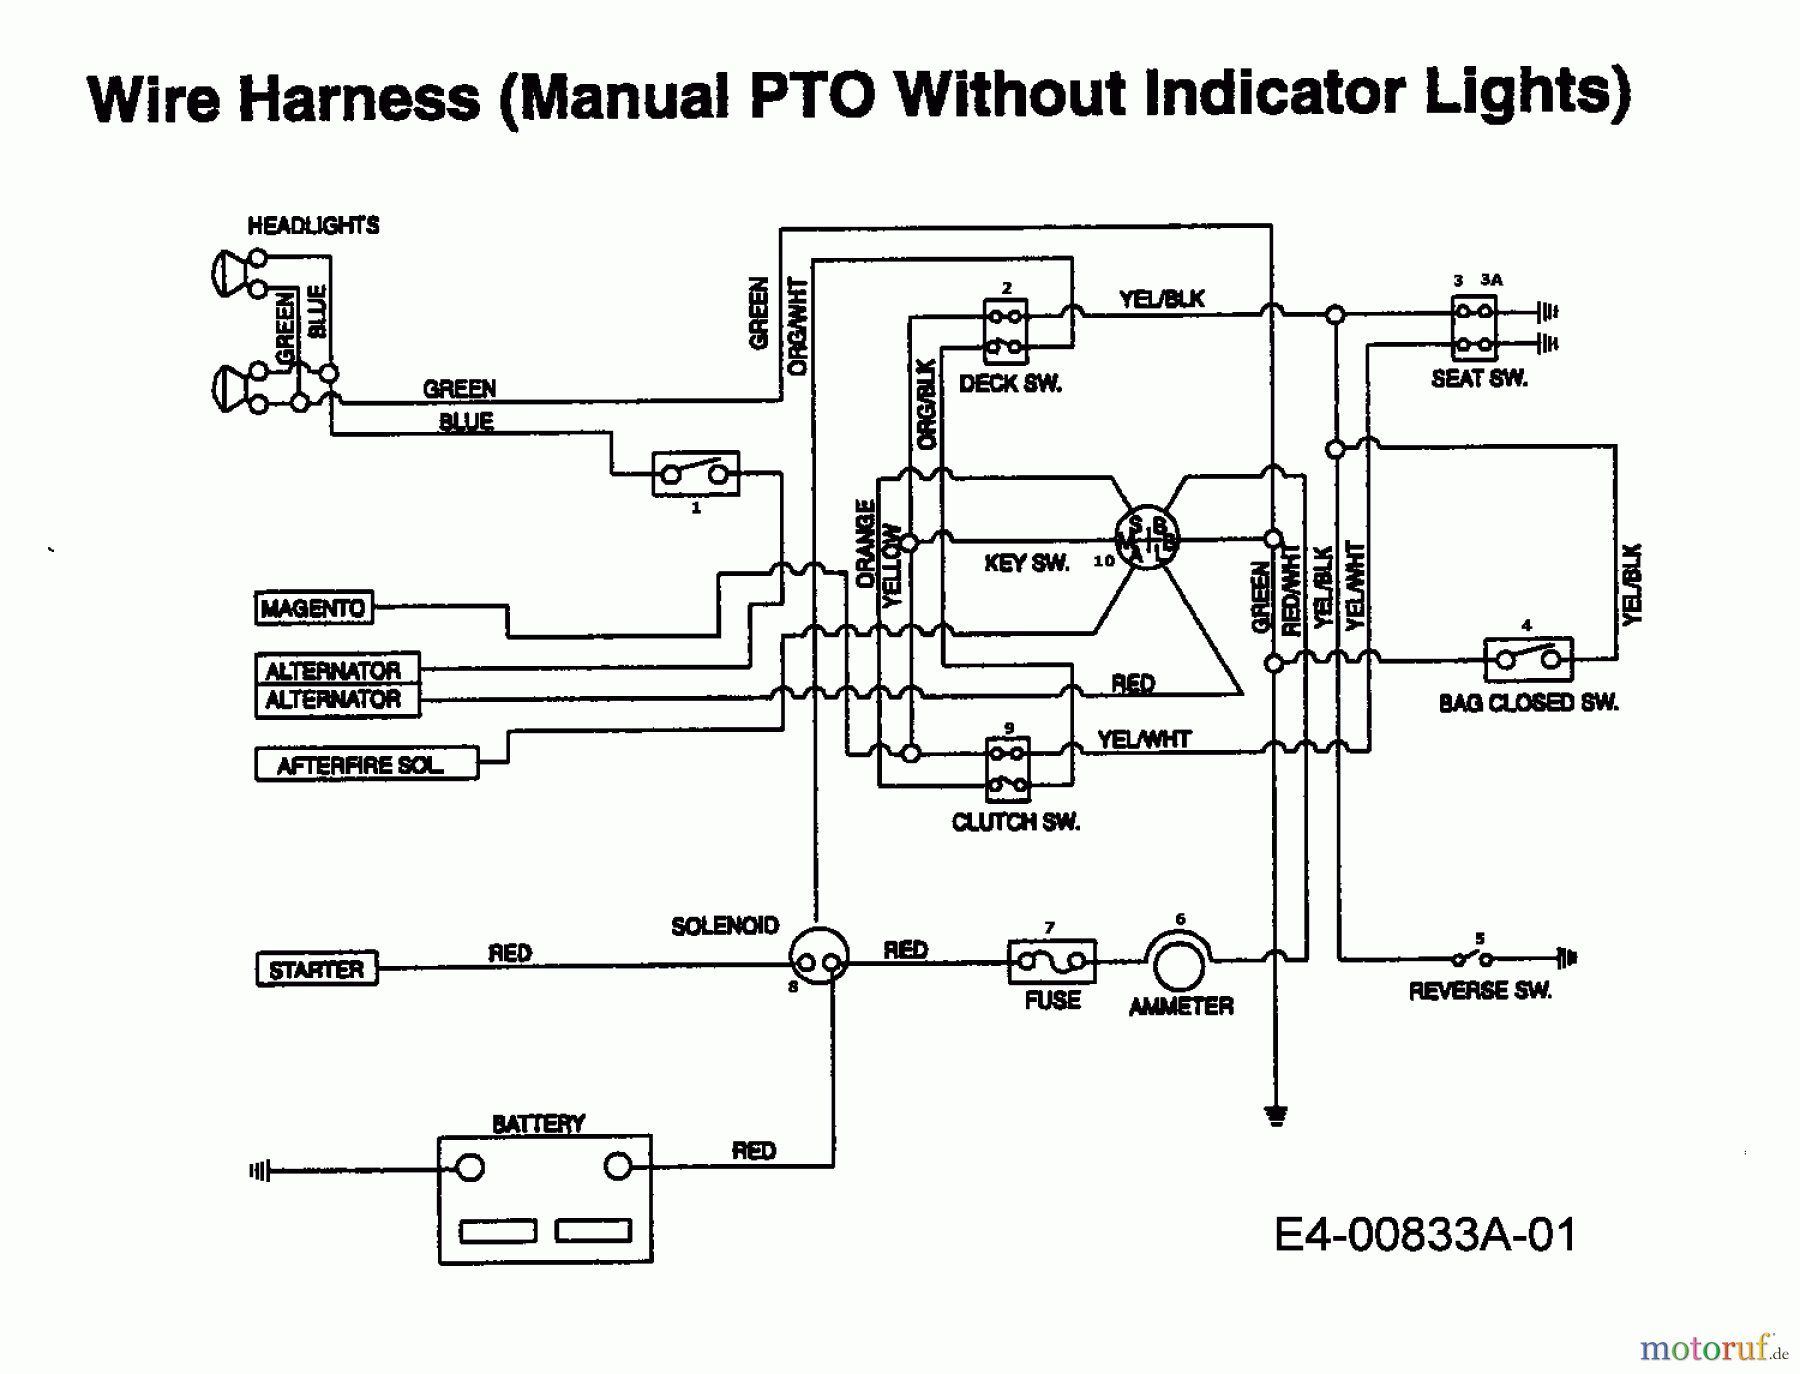  Edt Rasentraktoren EDT 145 H-102 13CP793N610  (1999) Schaltplan ohne Kontrolleuchten